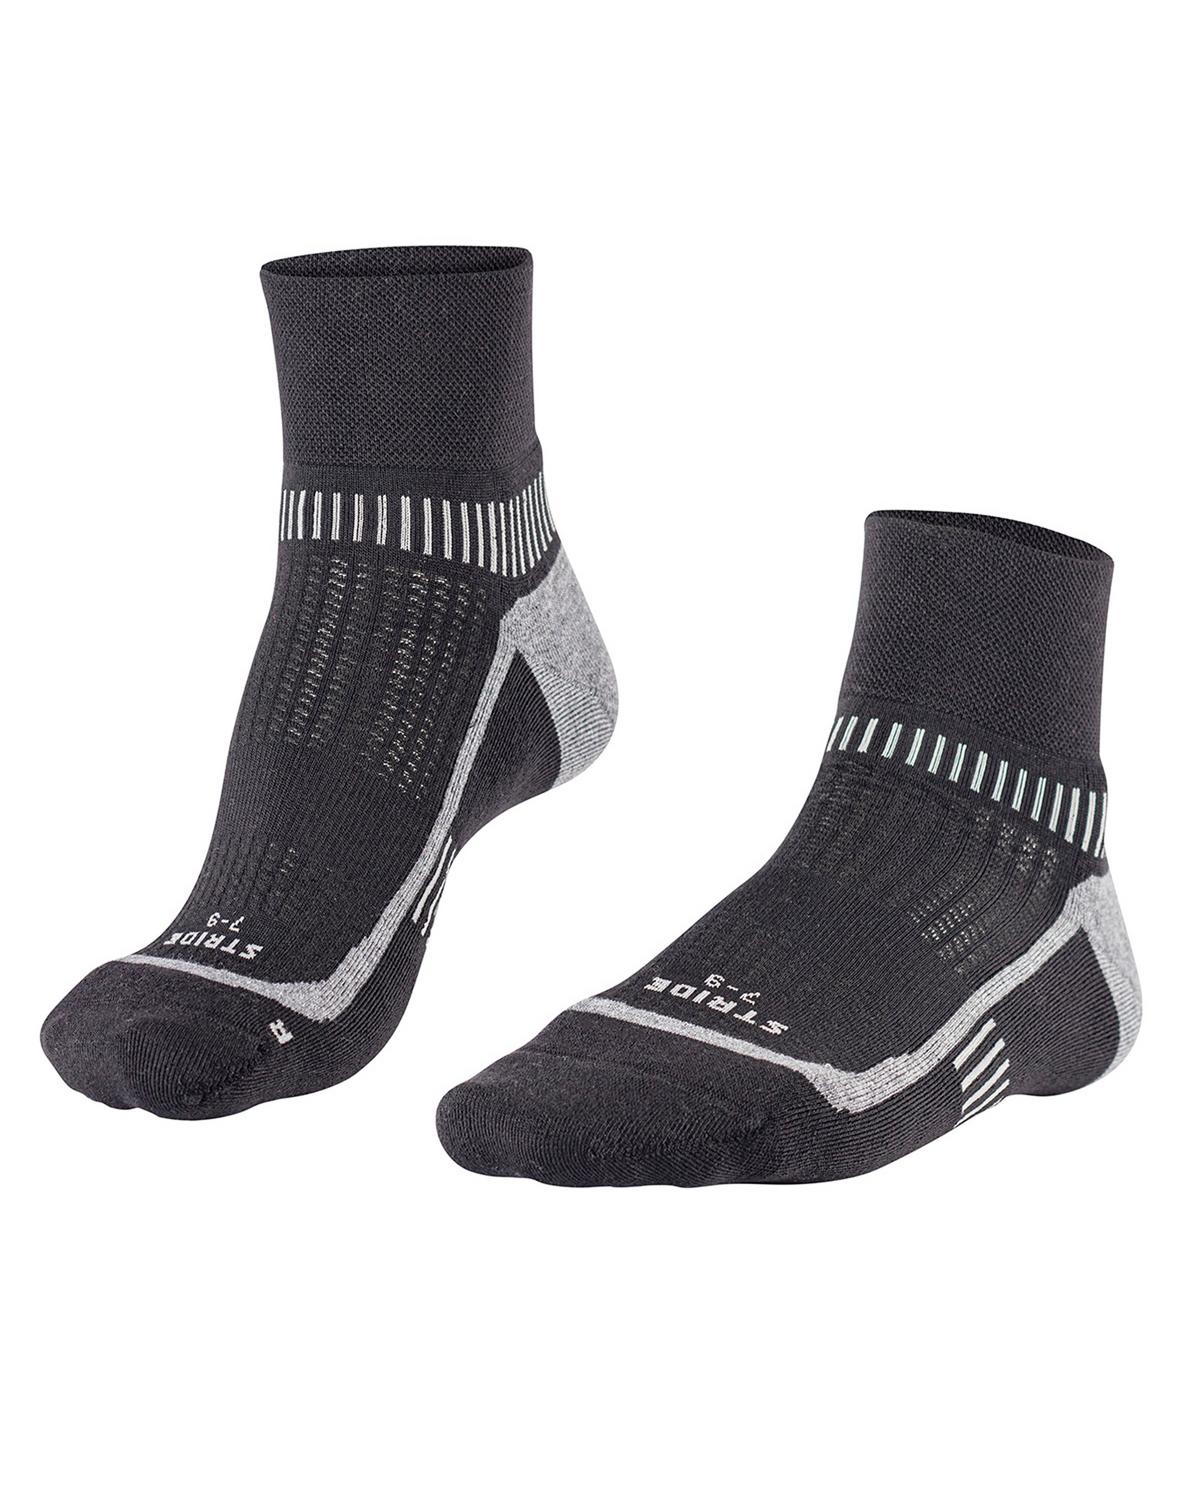 Falke Stride Running Socks -  Black